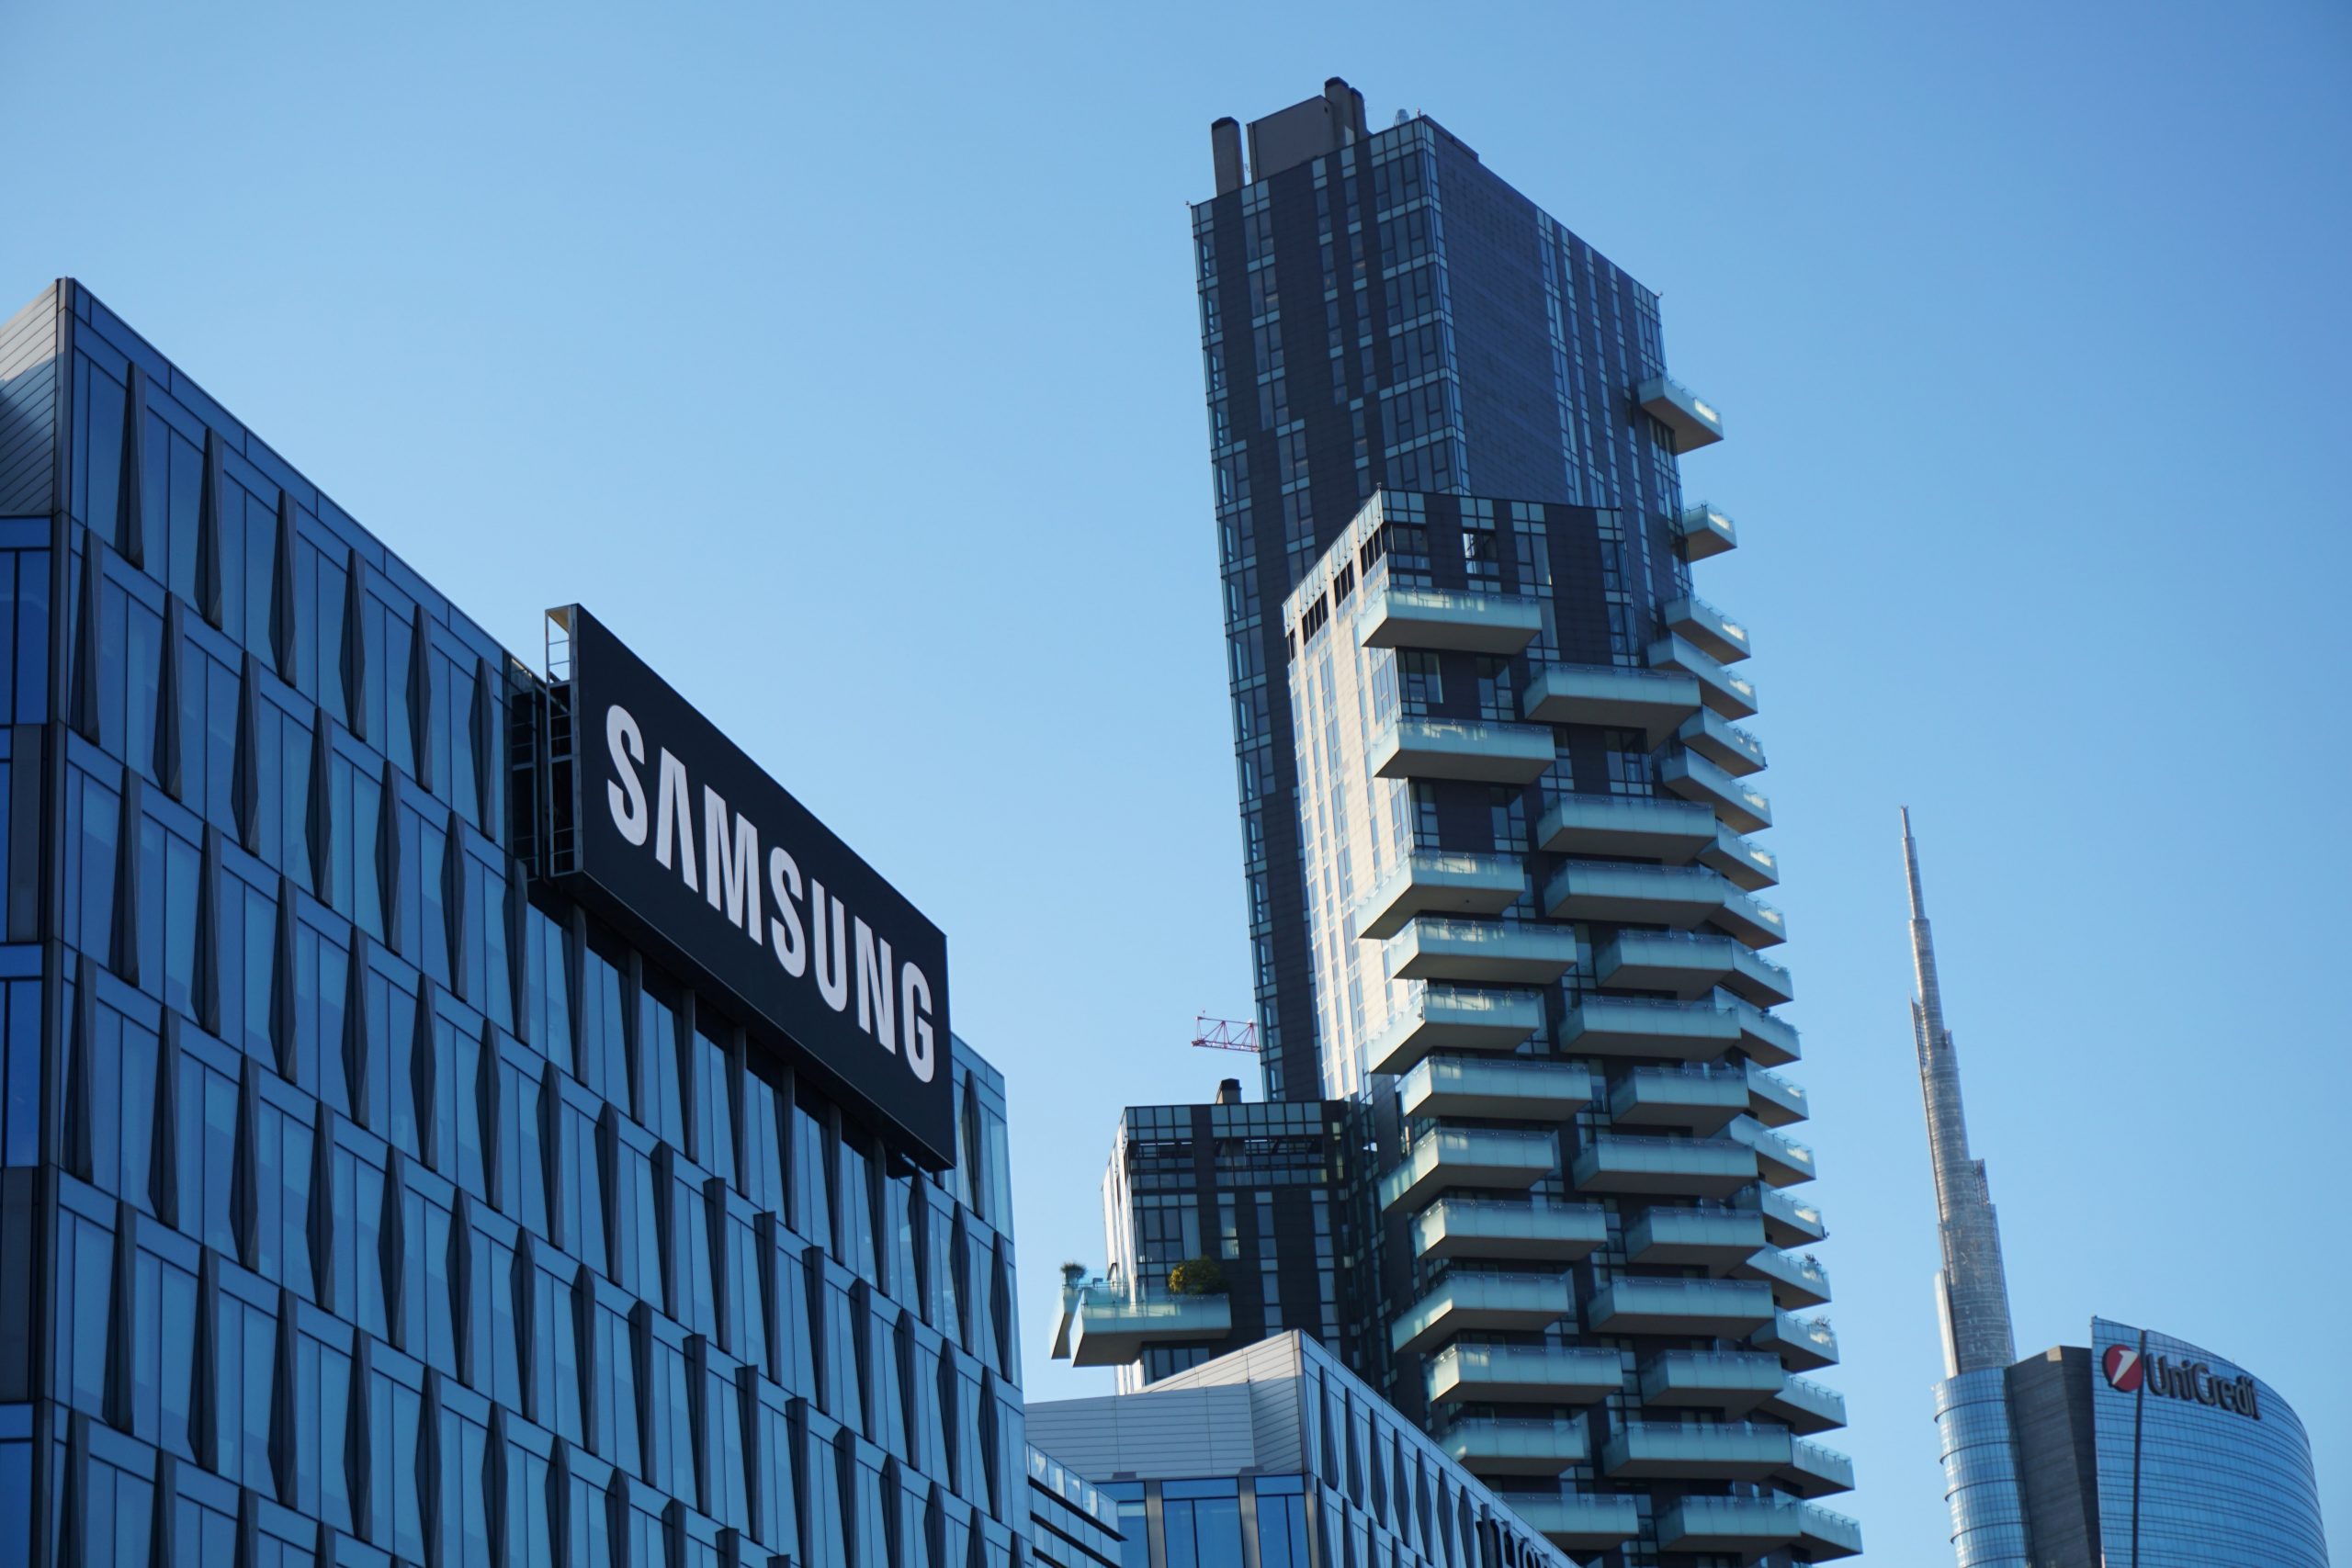 Samsung confirma que houve uma falha de segurança nos seus sistemas